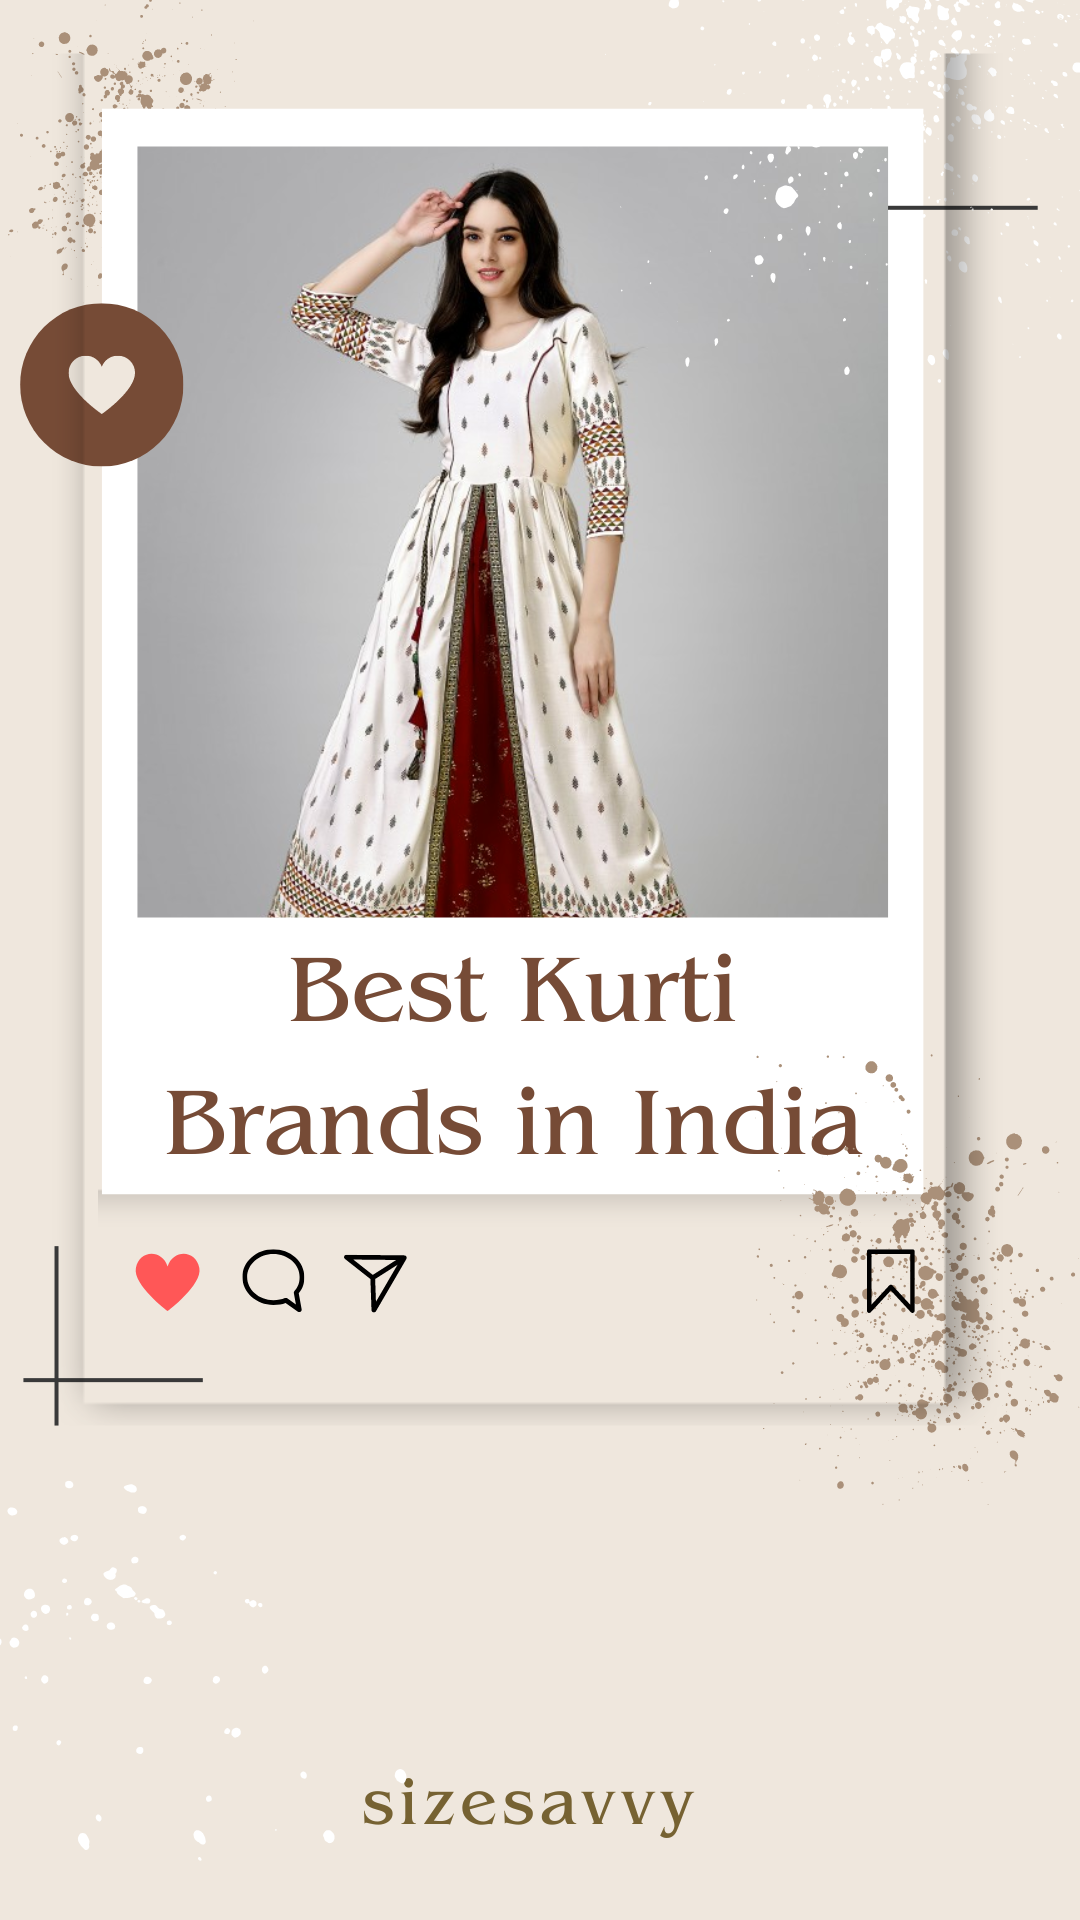 Jaipuri Kurti Manufacturer Brand Prastuti helping retail business owners -  Hindustan Times